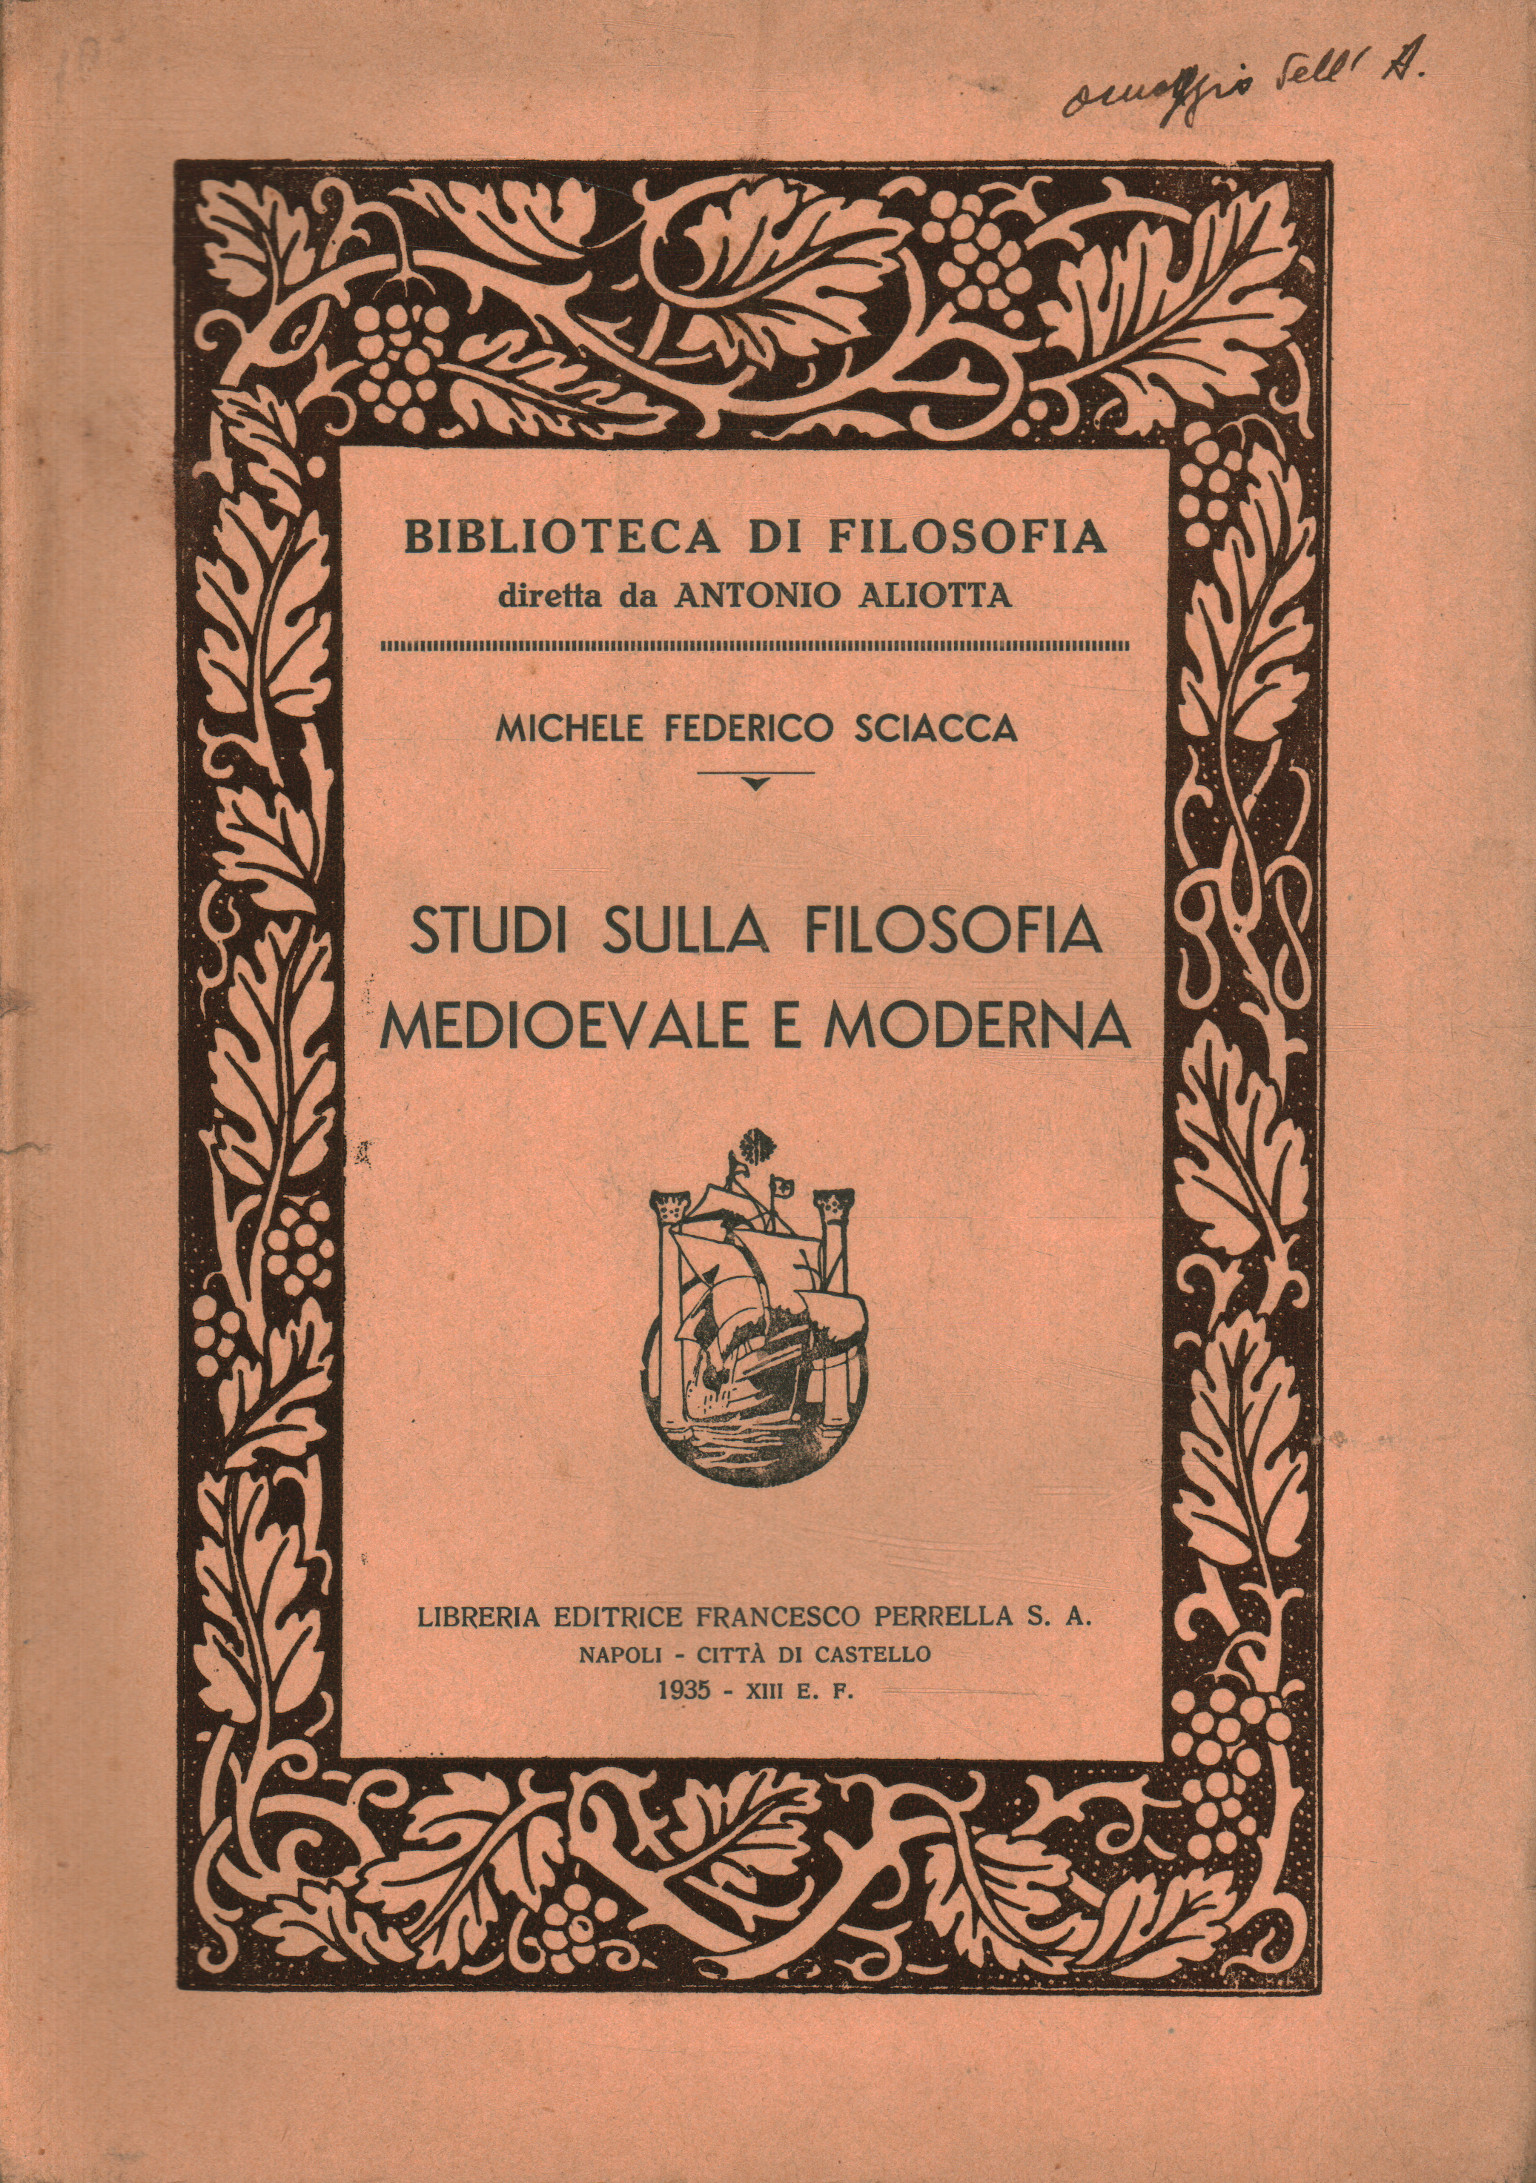 Estudios de filosofía medieval y moderna